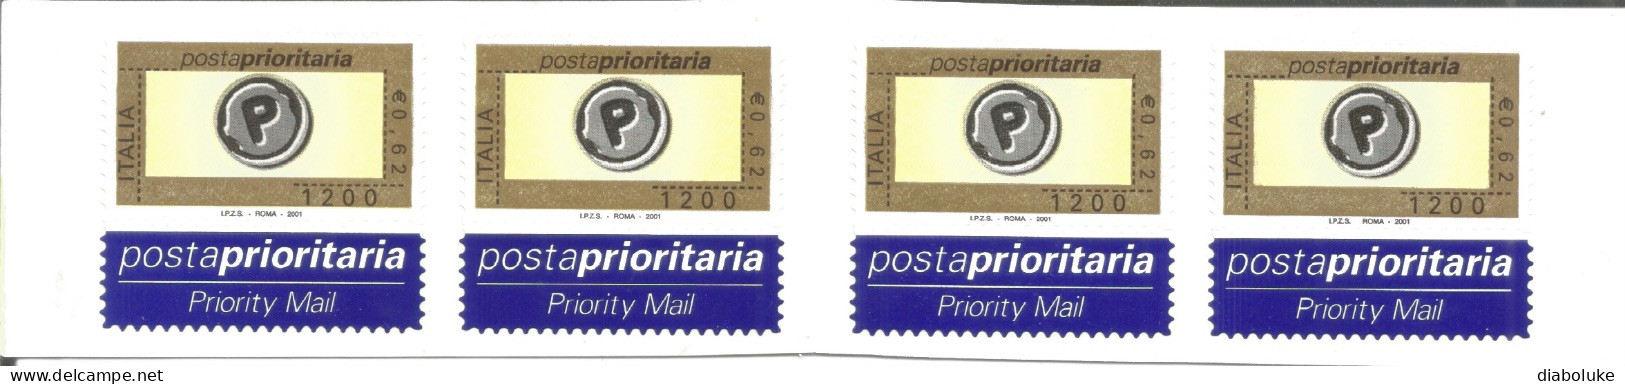 (REPUBBLICA ITALIANA) 2001, POSTA PRIORITARIA - Libretto Nuovo - Markenheftchen